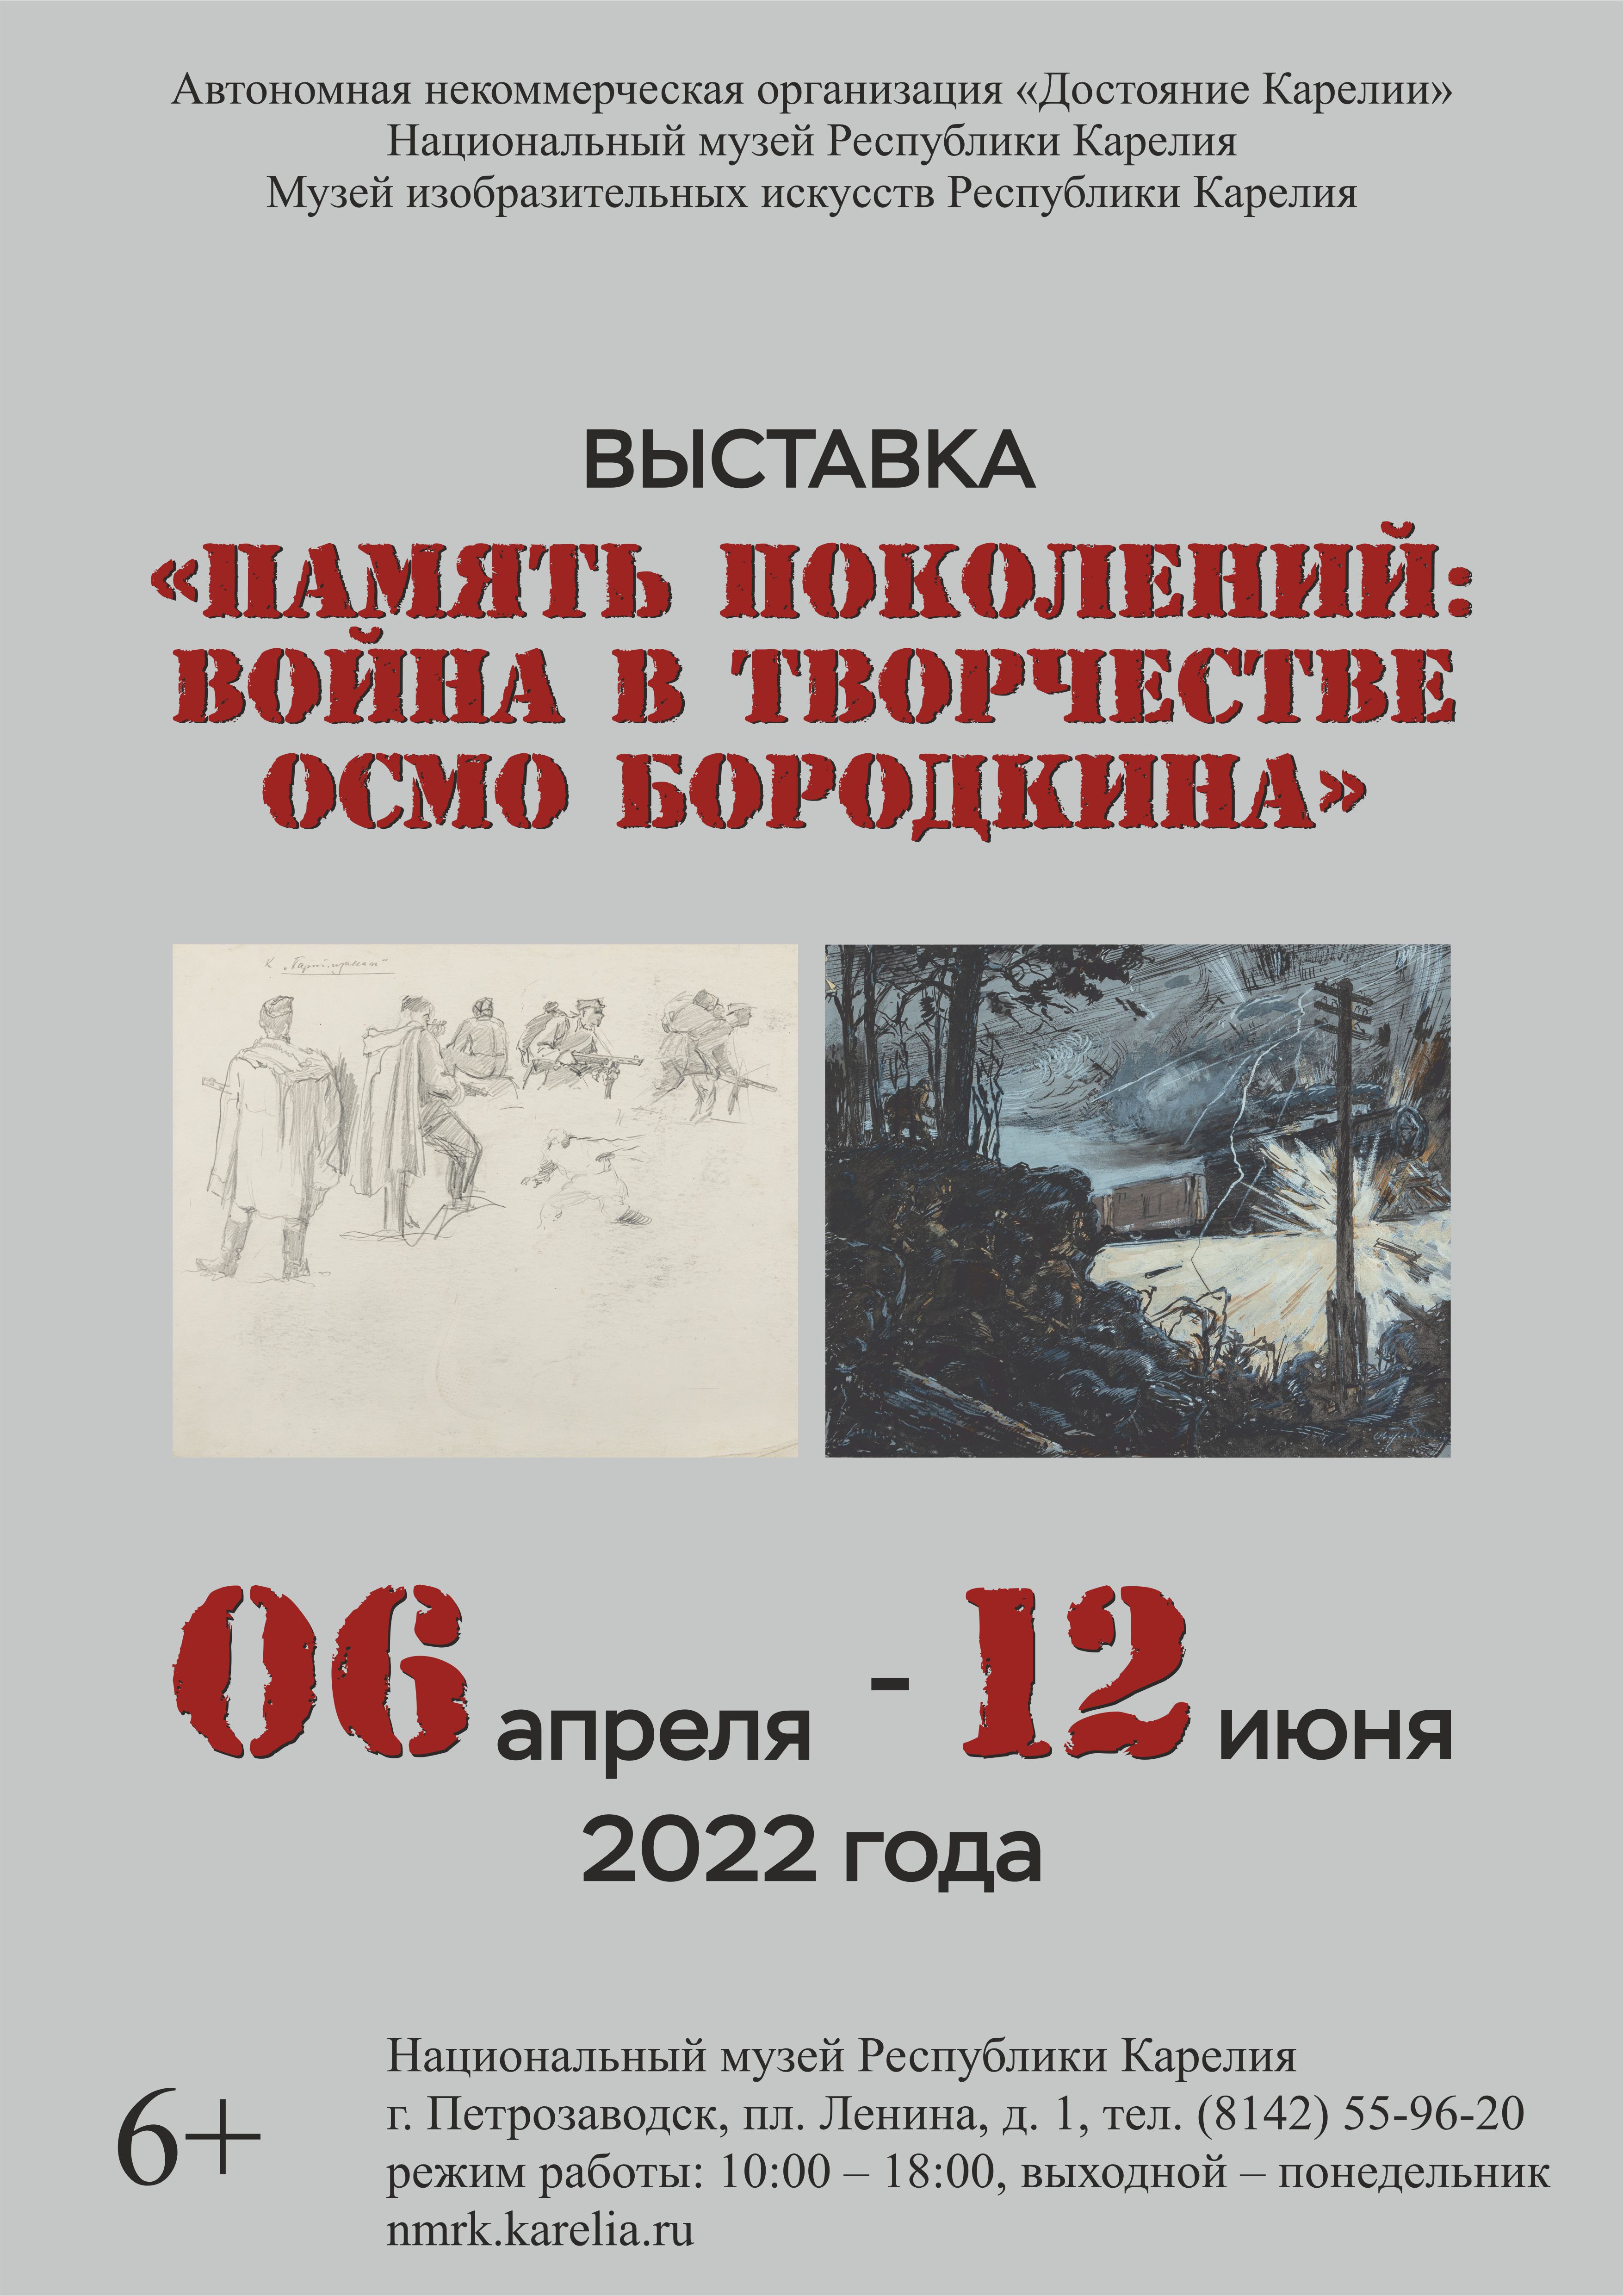 Открытие новой выставки в Национальном музее республики Карелия